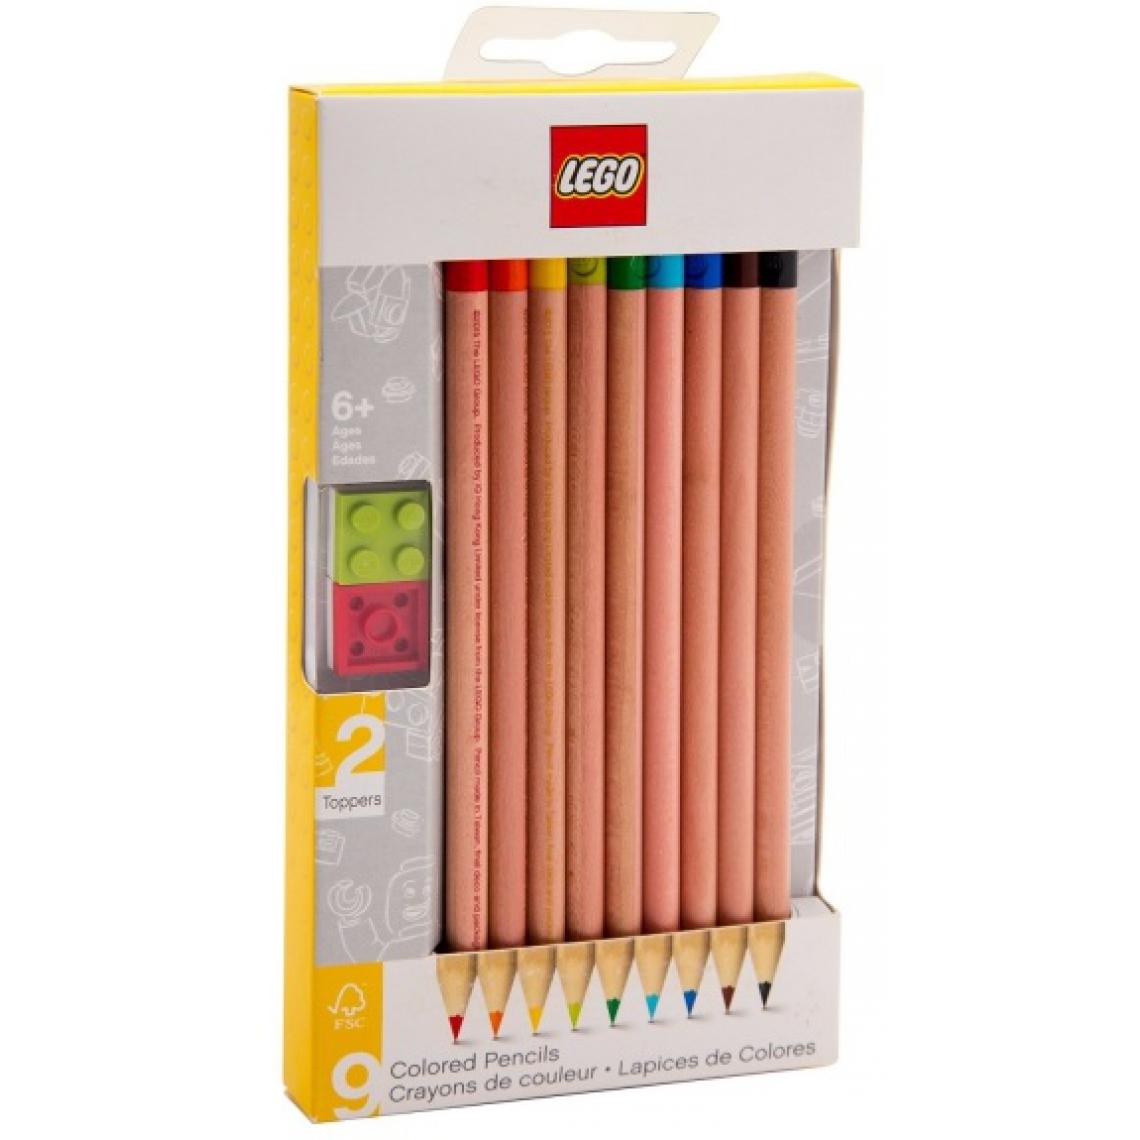 Lego - Lego papeterie Crayons de Couleurs avec Embout Fantaisie - Dessin et peinture